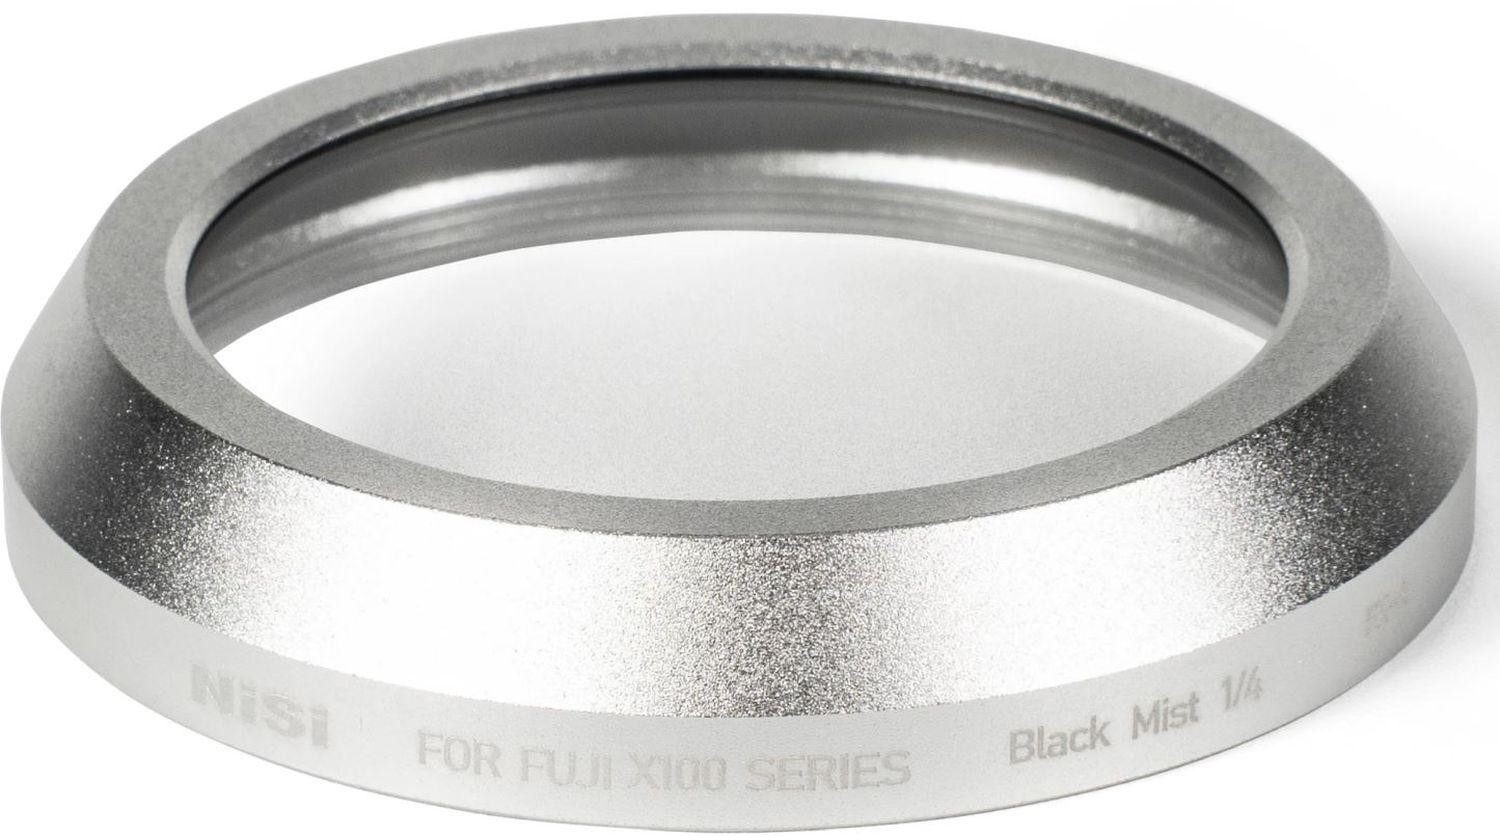 Nisi Fujifilm X100 Black Mist 1/4 silber Objektivzubehör